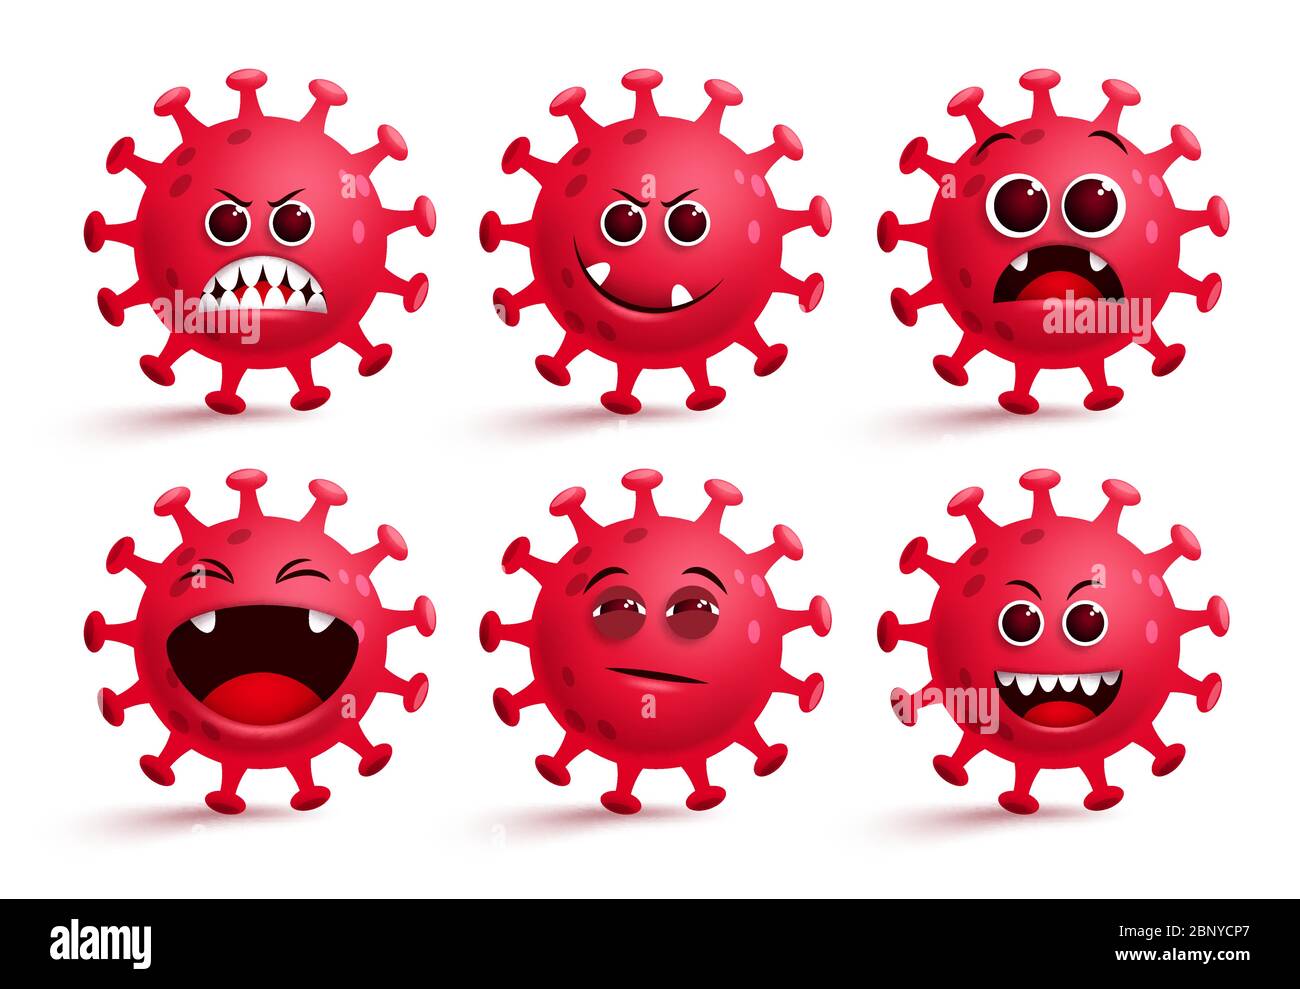 Coronavirus Covid-19 Emoji-Vektor-Set. Covid19 ncov Virus Smileys Emoji mit roten gruseligen, überraschenden und frechen Gesichtsausdrücken für globale Pandemie. Stock Vektor